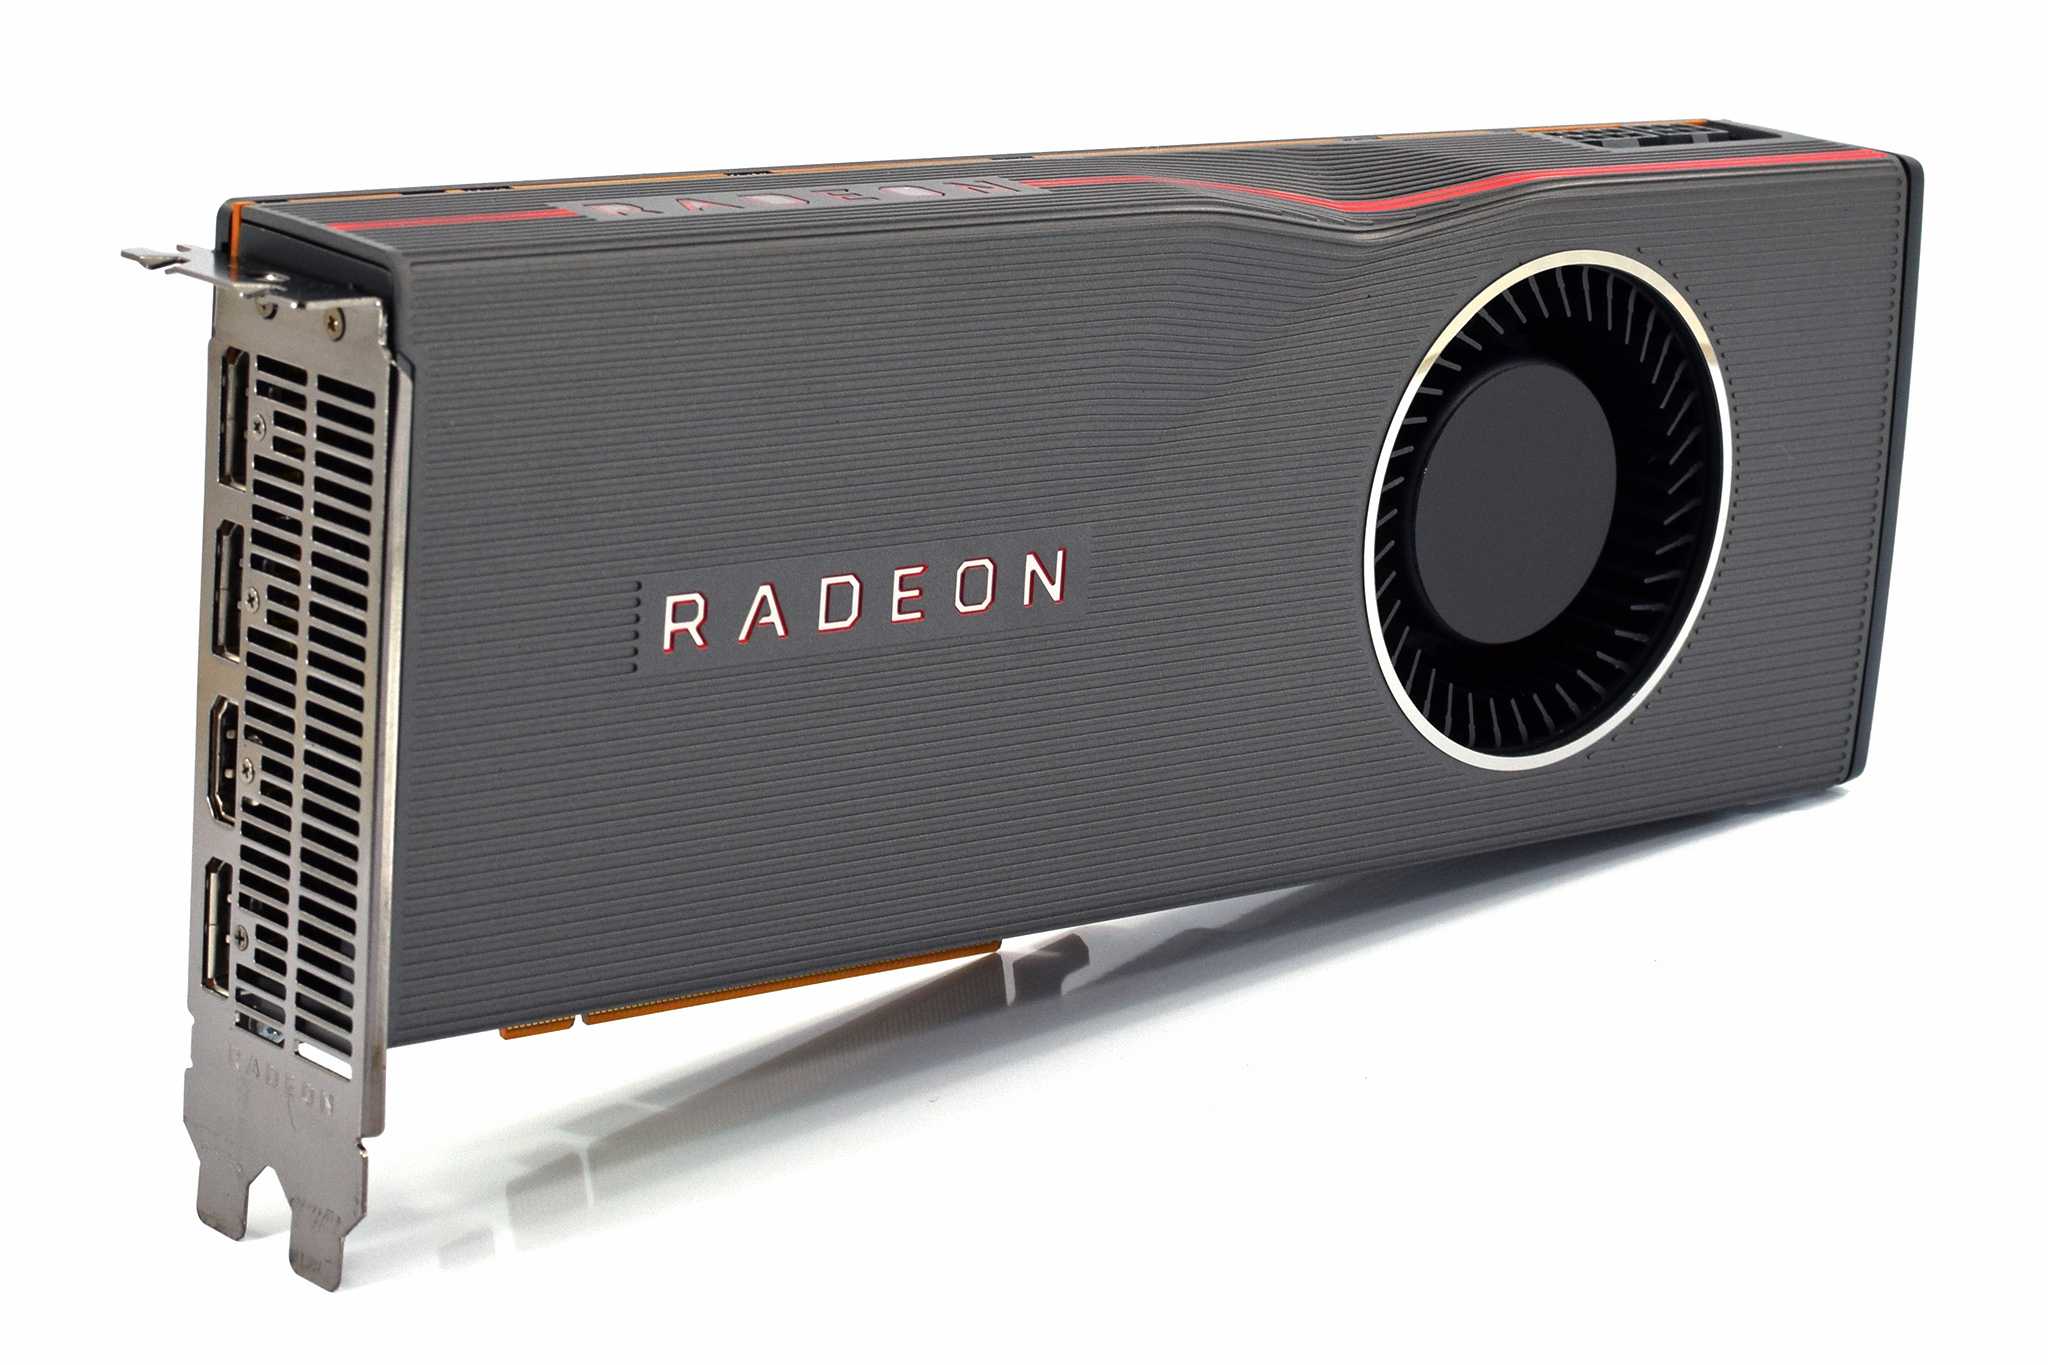 Radeon rx 5700 xt gaming. RX 5700 XT. Radeon RX 5700 XT. Видеокарта AMD rx5700. AMD RX 5700 XT 8gb.